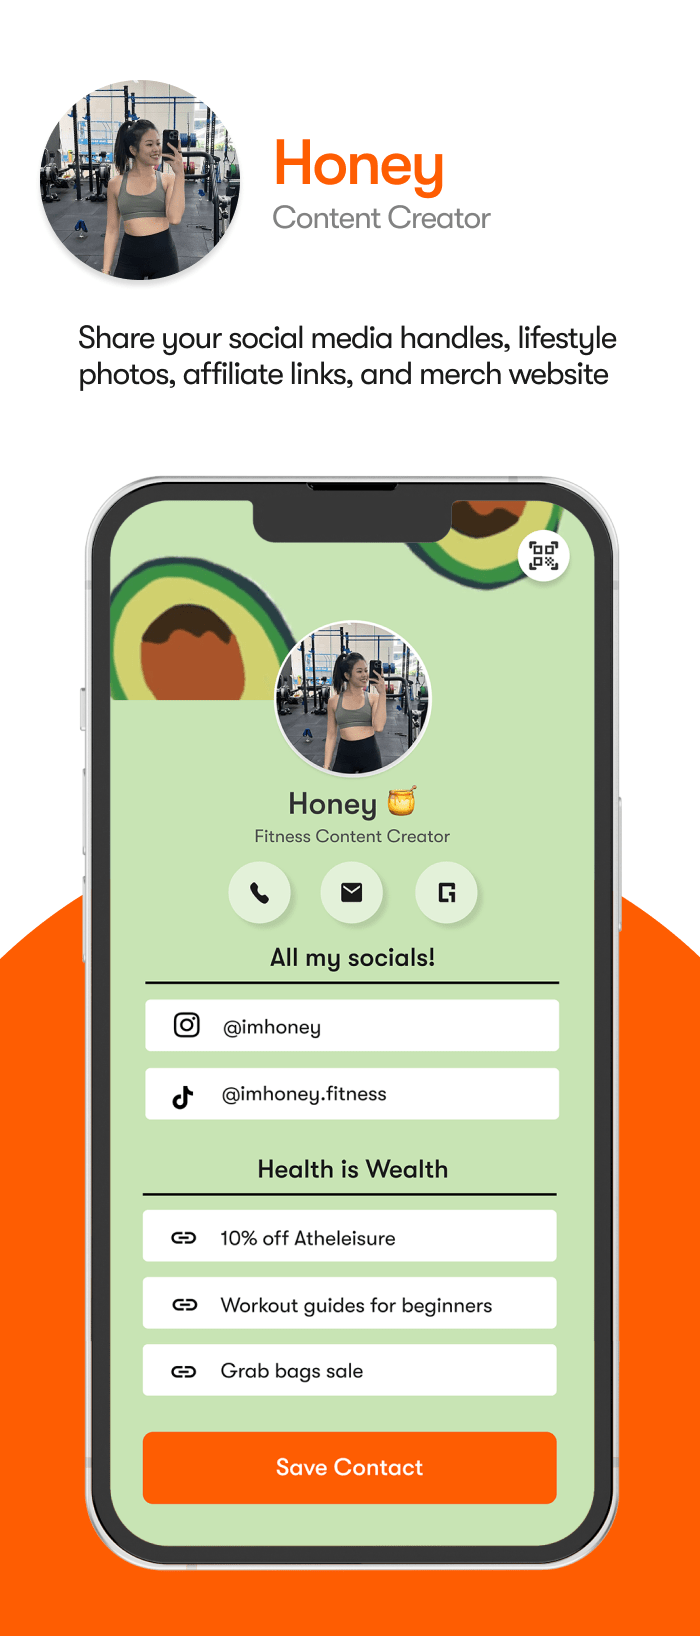 One Good Ring user - Honey